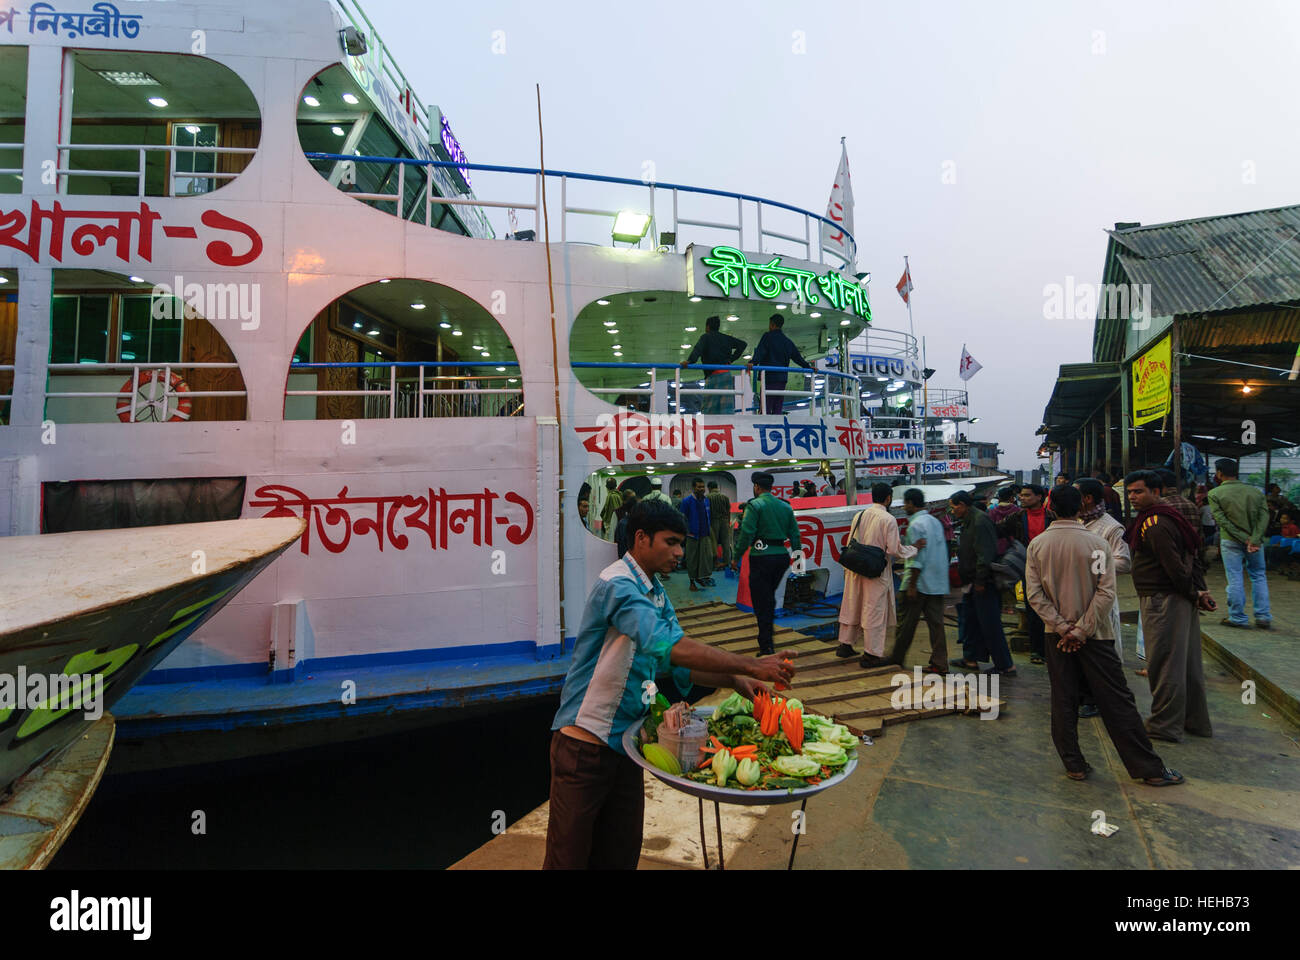 Barisal: Ferries ship to Dhaka, Barisal Division, Bangladesh Stock Photo